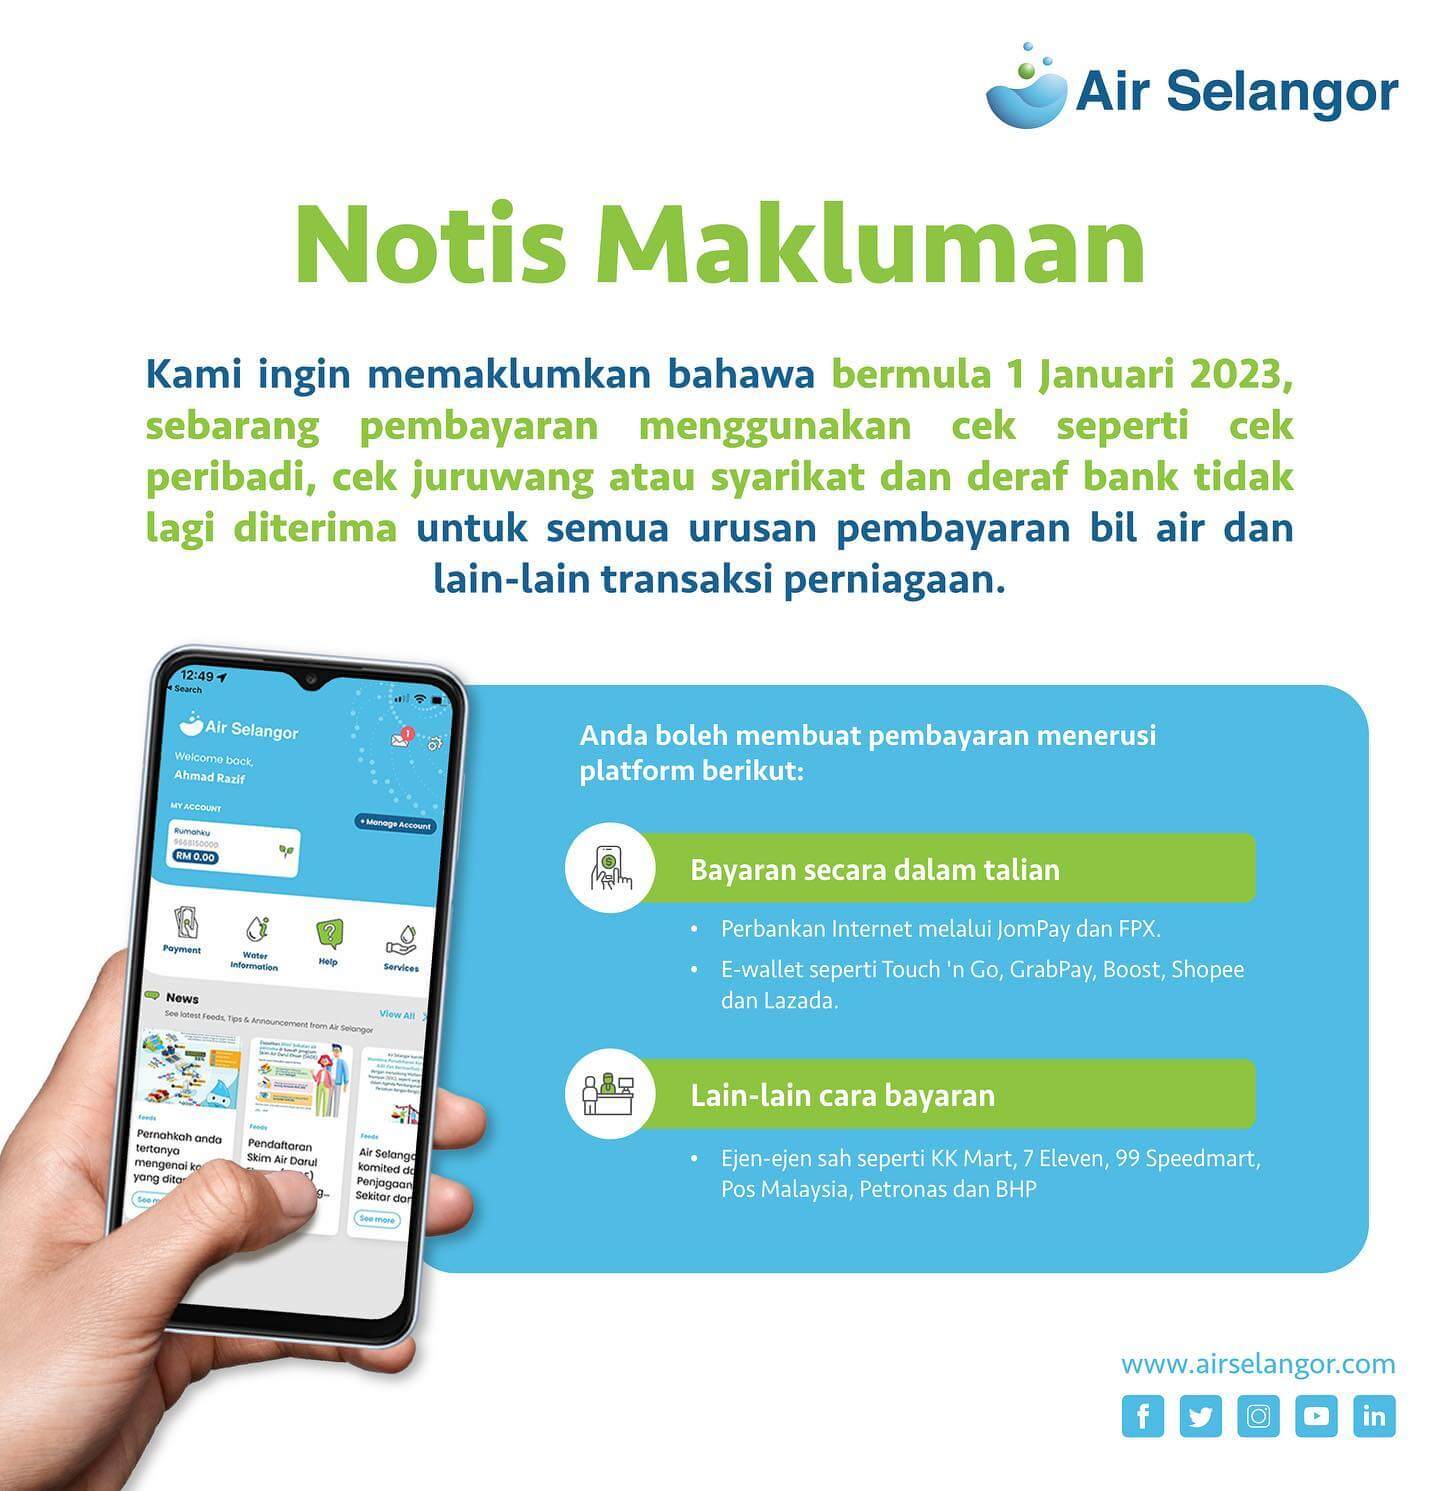 Notis Makluman 29 September 2022 Hydro Hub Air Selangor